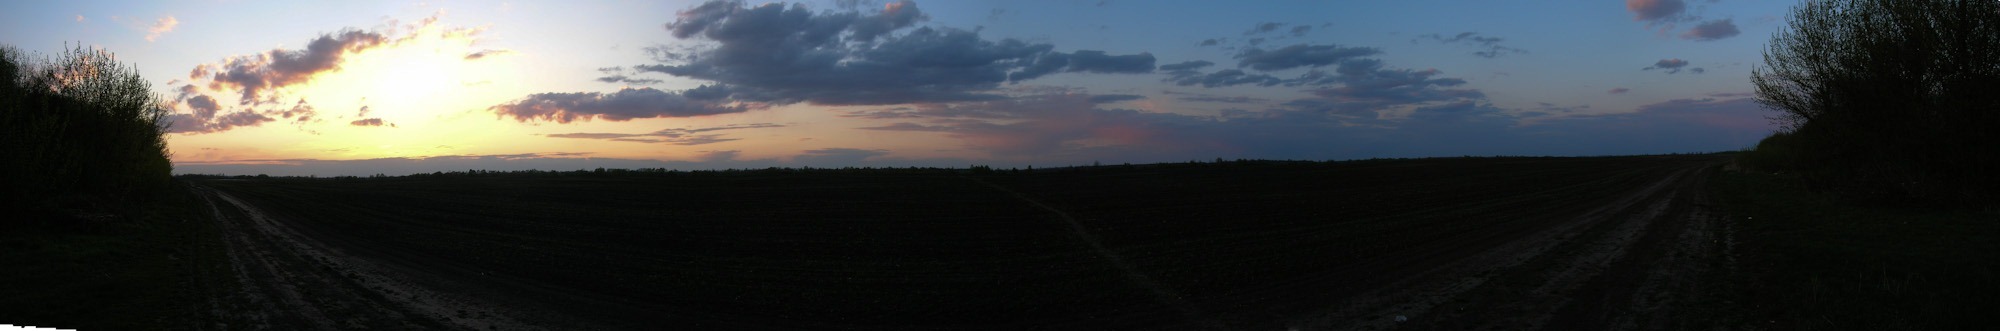 Evening panorama 